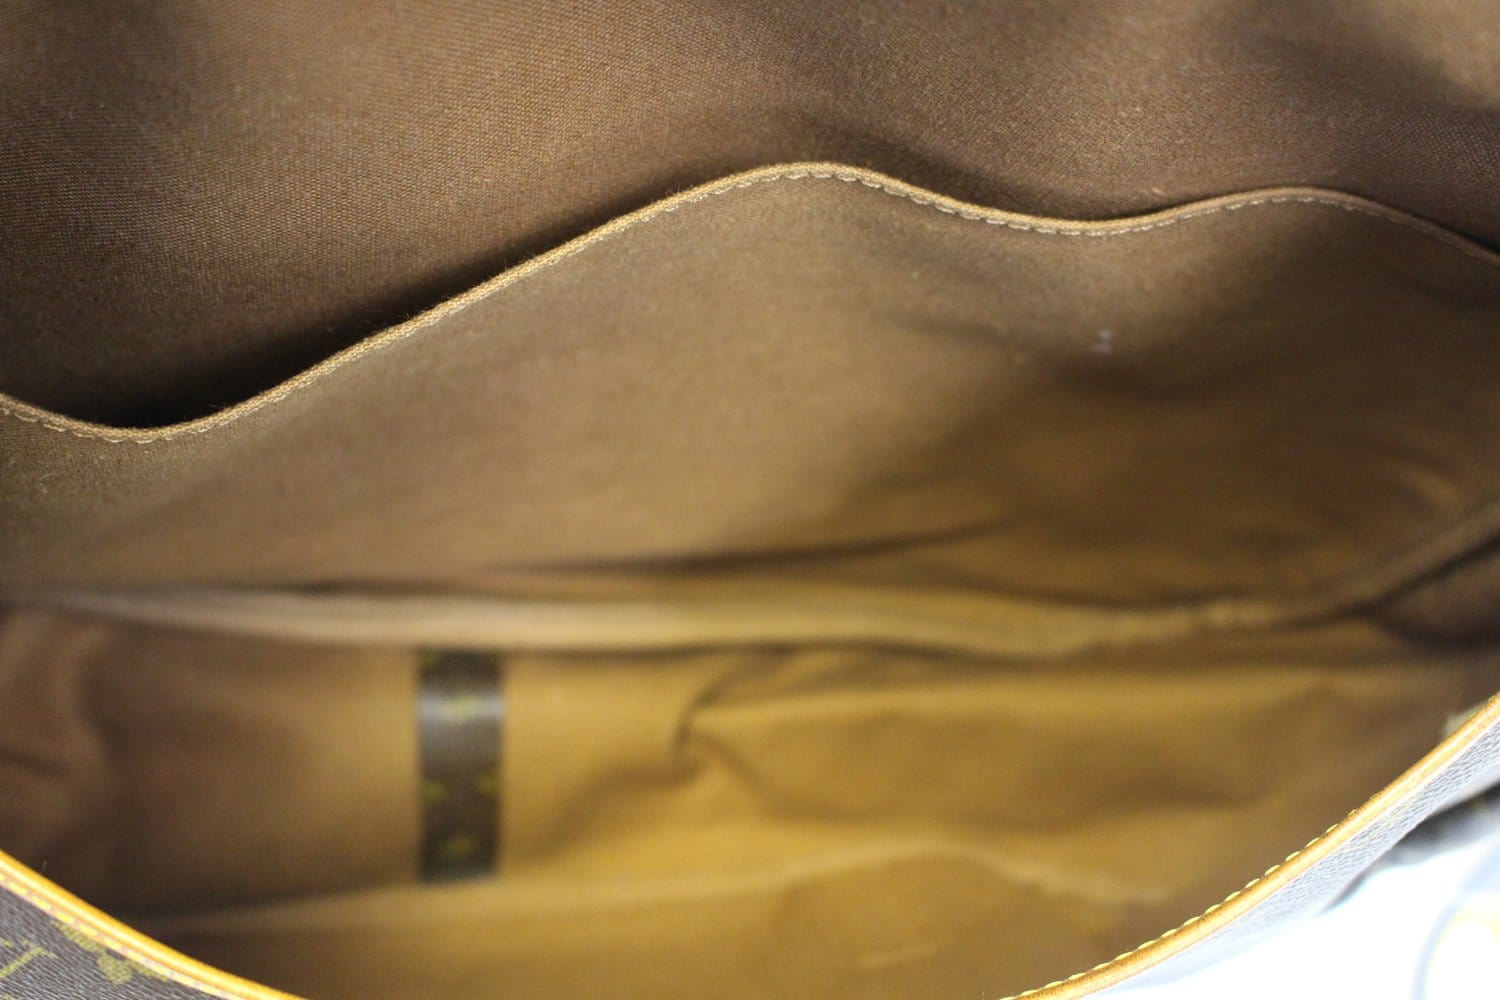 Saumur 43, Used & Preloved Louis Vuitton Messenger Bag